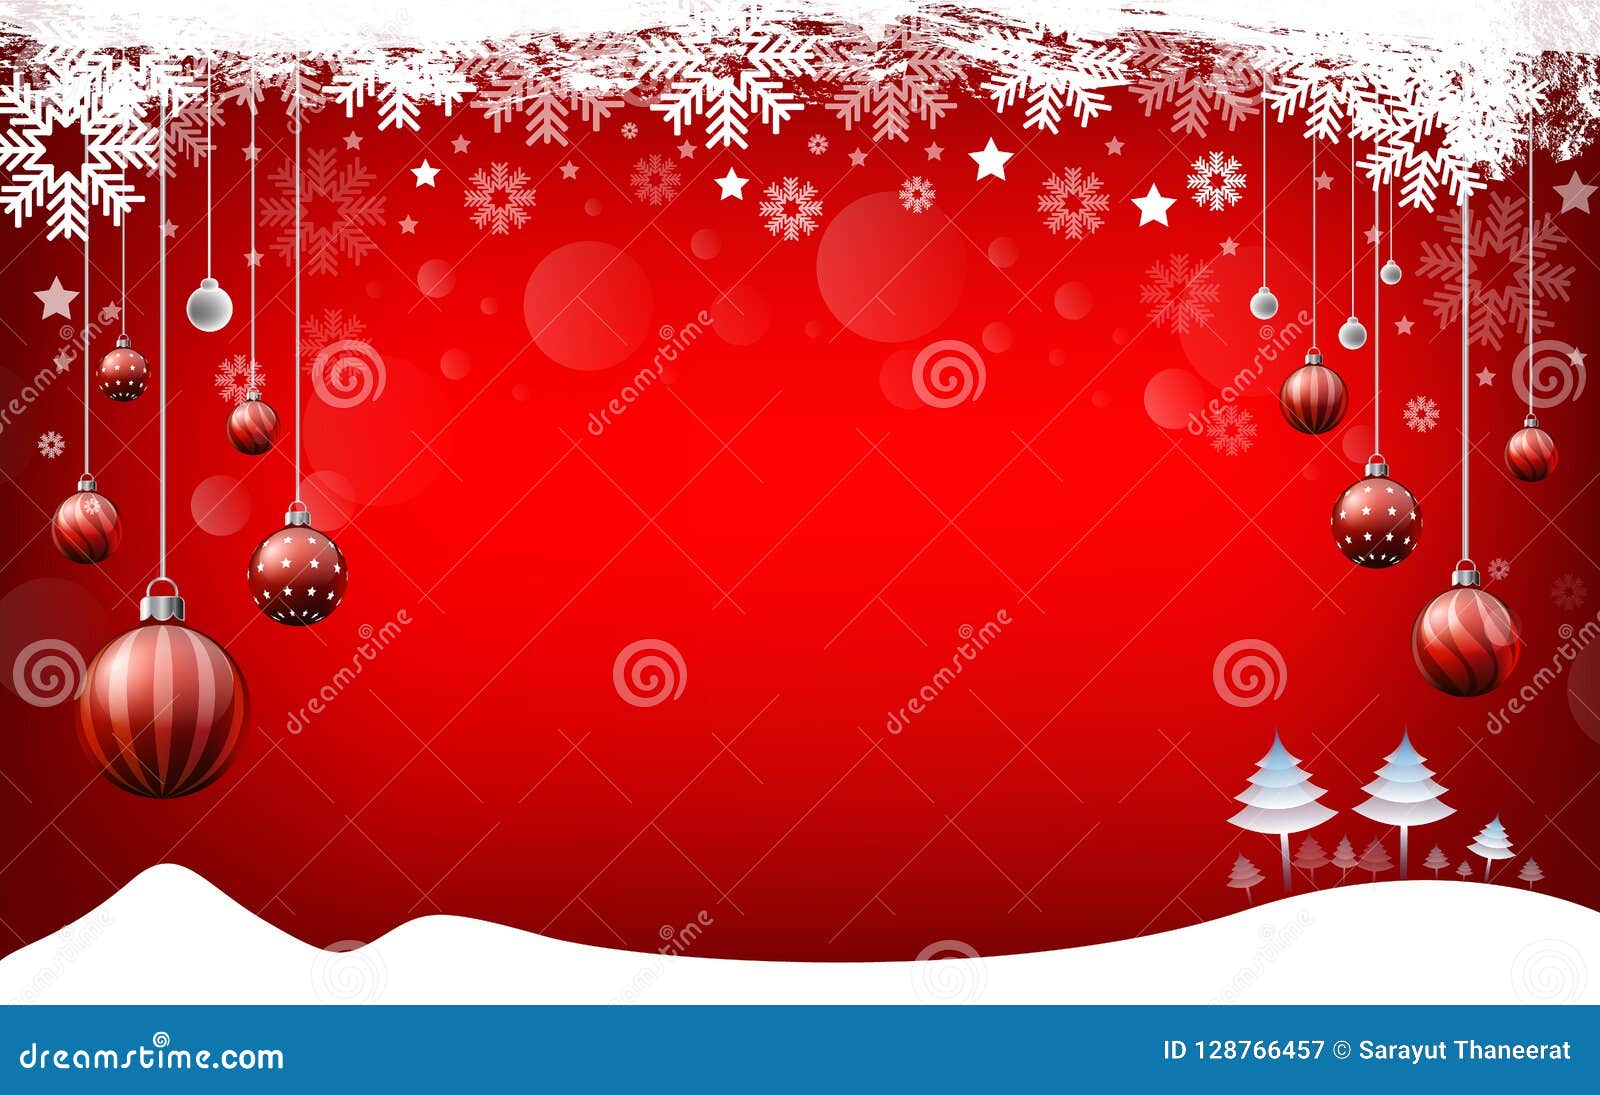 Bạn đang tìm kiếm những hình ảnh Giáng sinh đẹp, chất lượng cao để trang trí cho ngày lễ sum vầy sắp tới? Đừng bỏ qua bộ sưu tập hình ảnh Christmas Background Red Stock Photos này. Bạn có thể tải miễn phí và sử dụng để trang trí nhà trang trọng, lung linh.